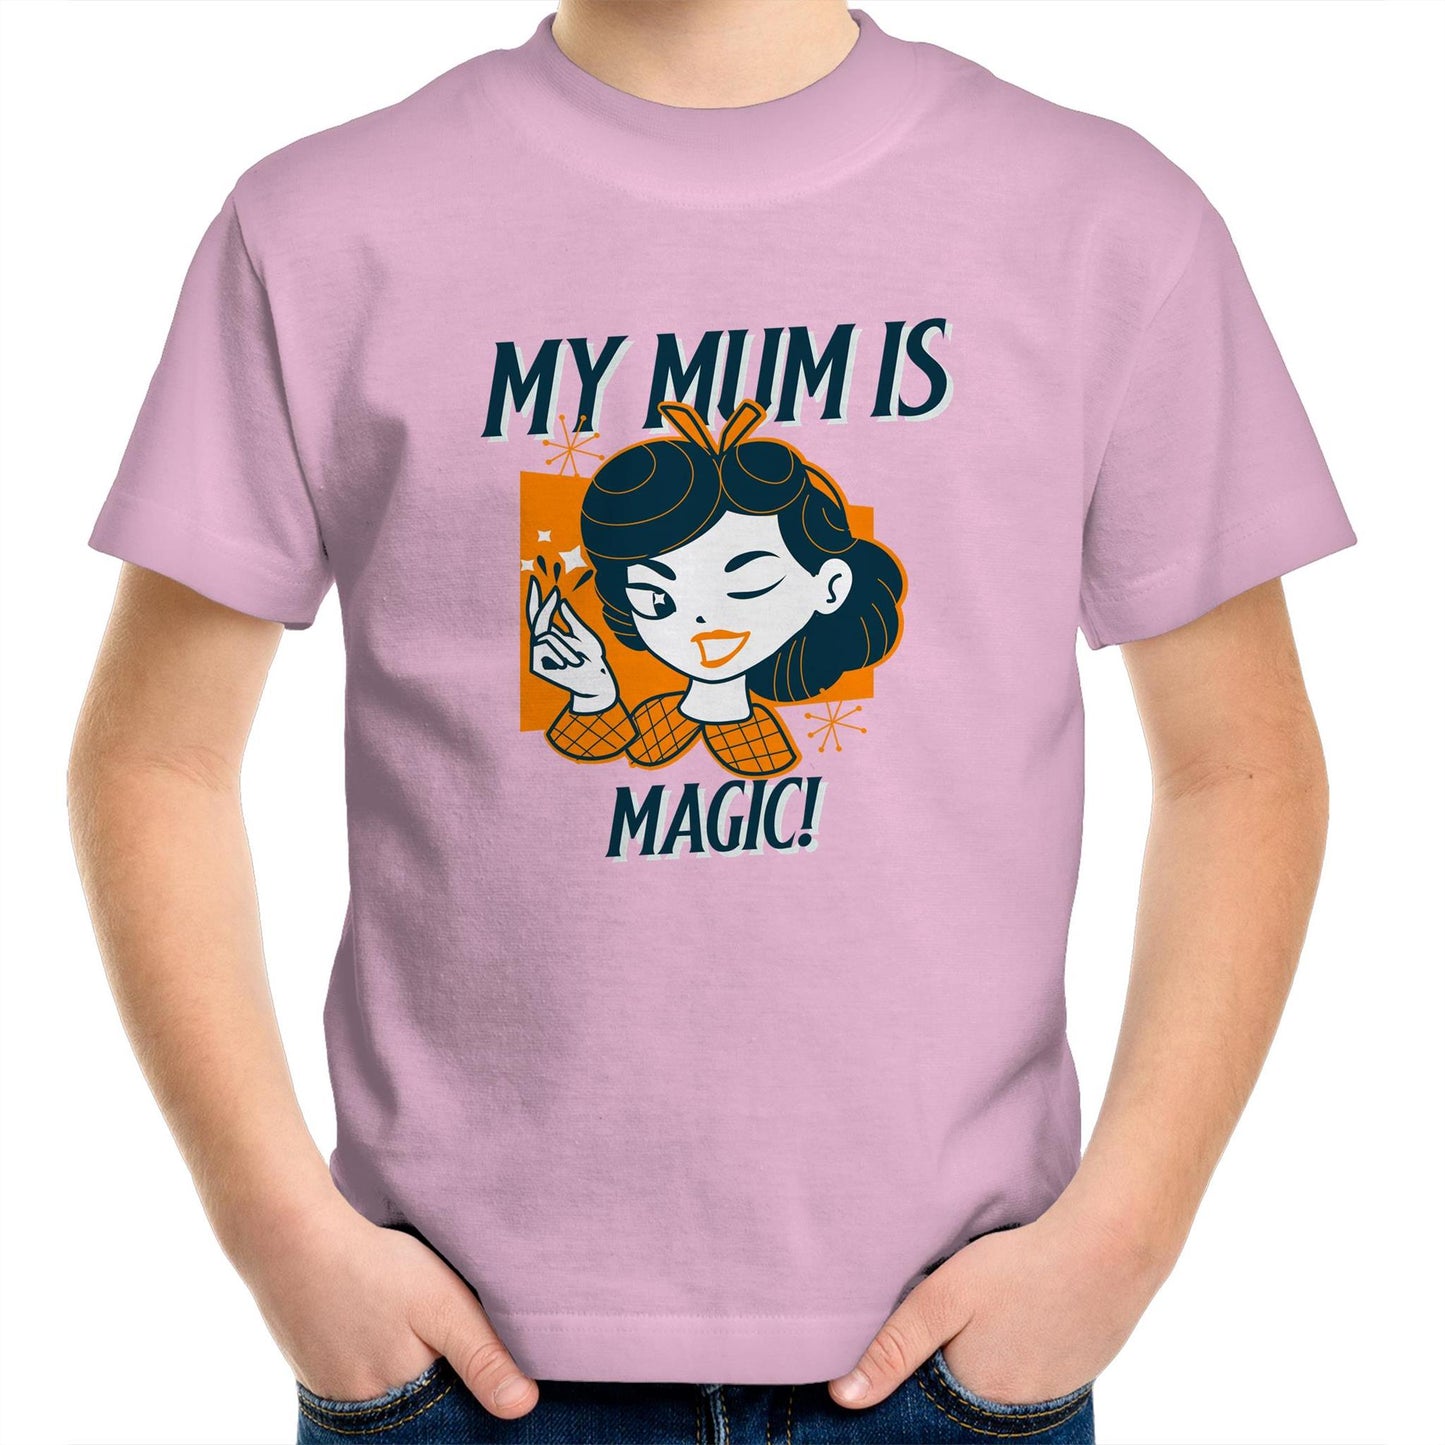 My Mum Is Magic - Kids Youth Crew T-Shirt Pink Kids Youth T-shirt Mum Retro